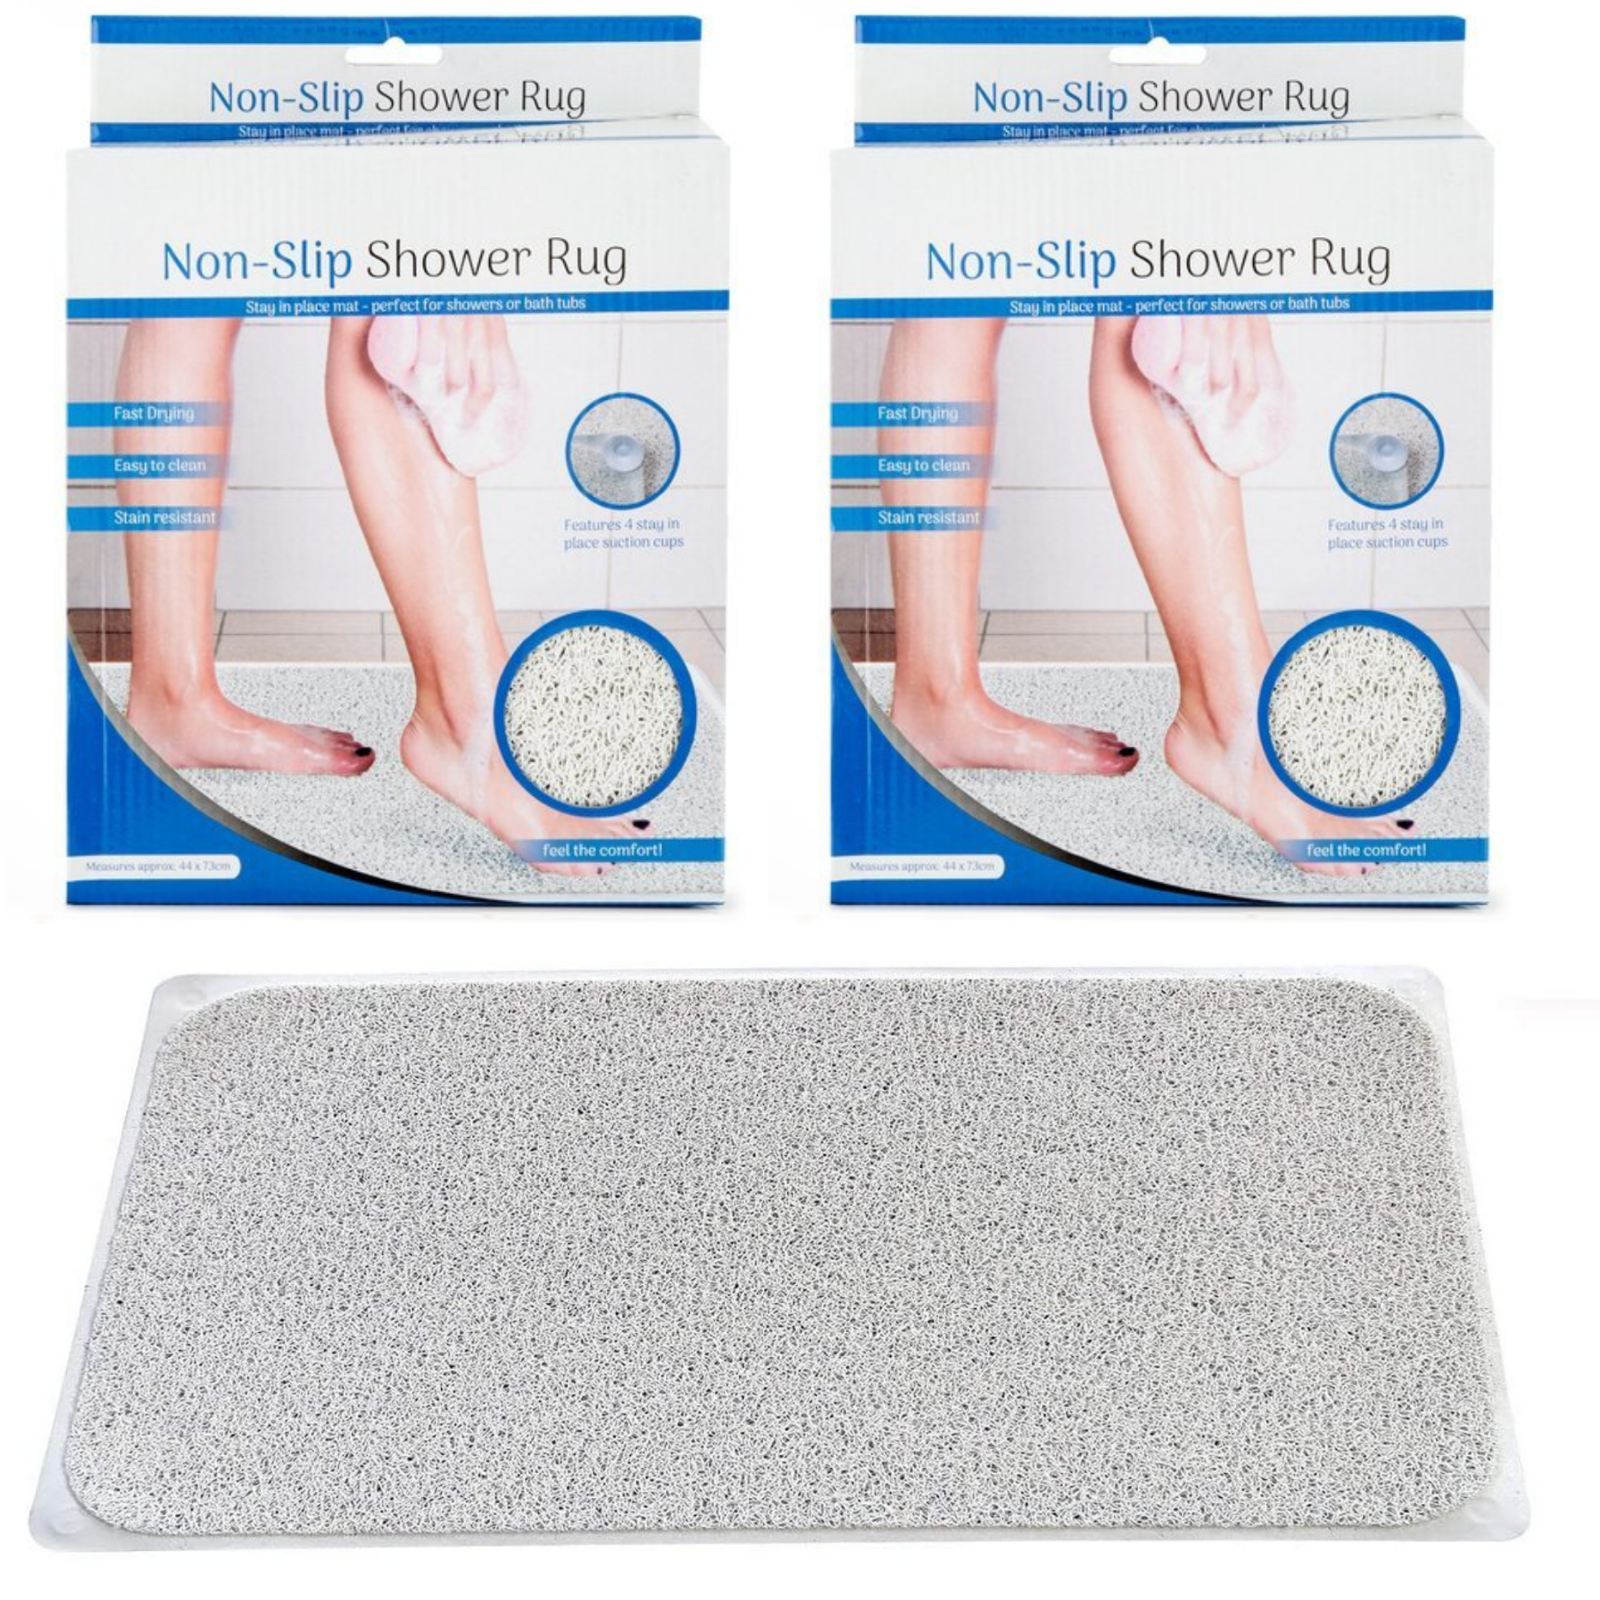 2x Anti Slip Loofah Shower Rug Non Slip Bathroom Bath Mat Carpet Water Drains